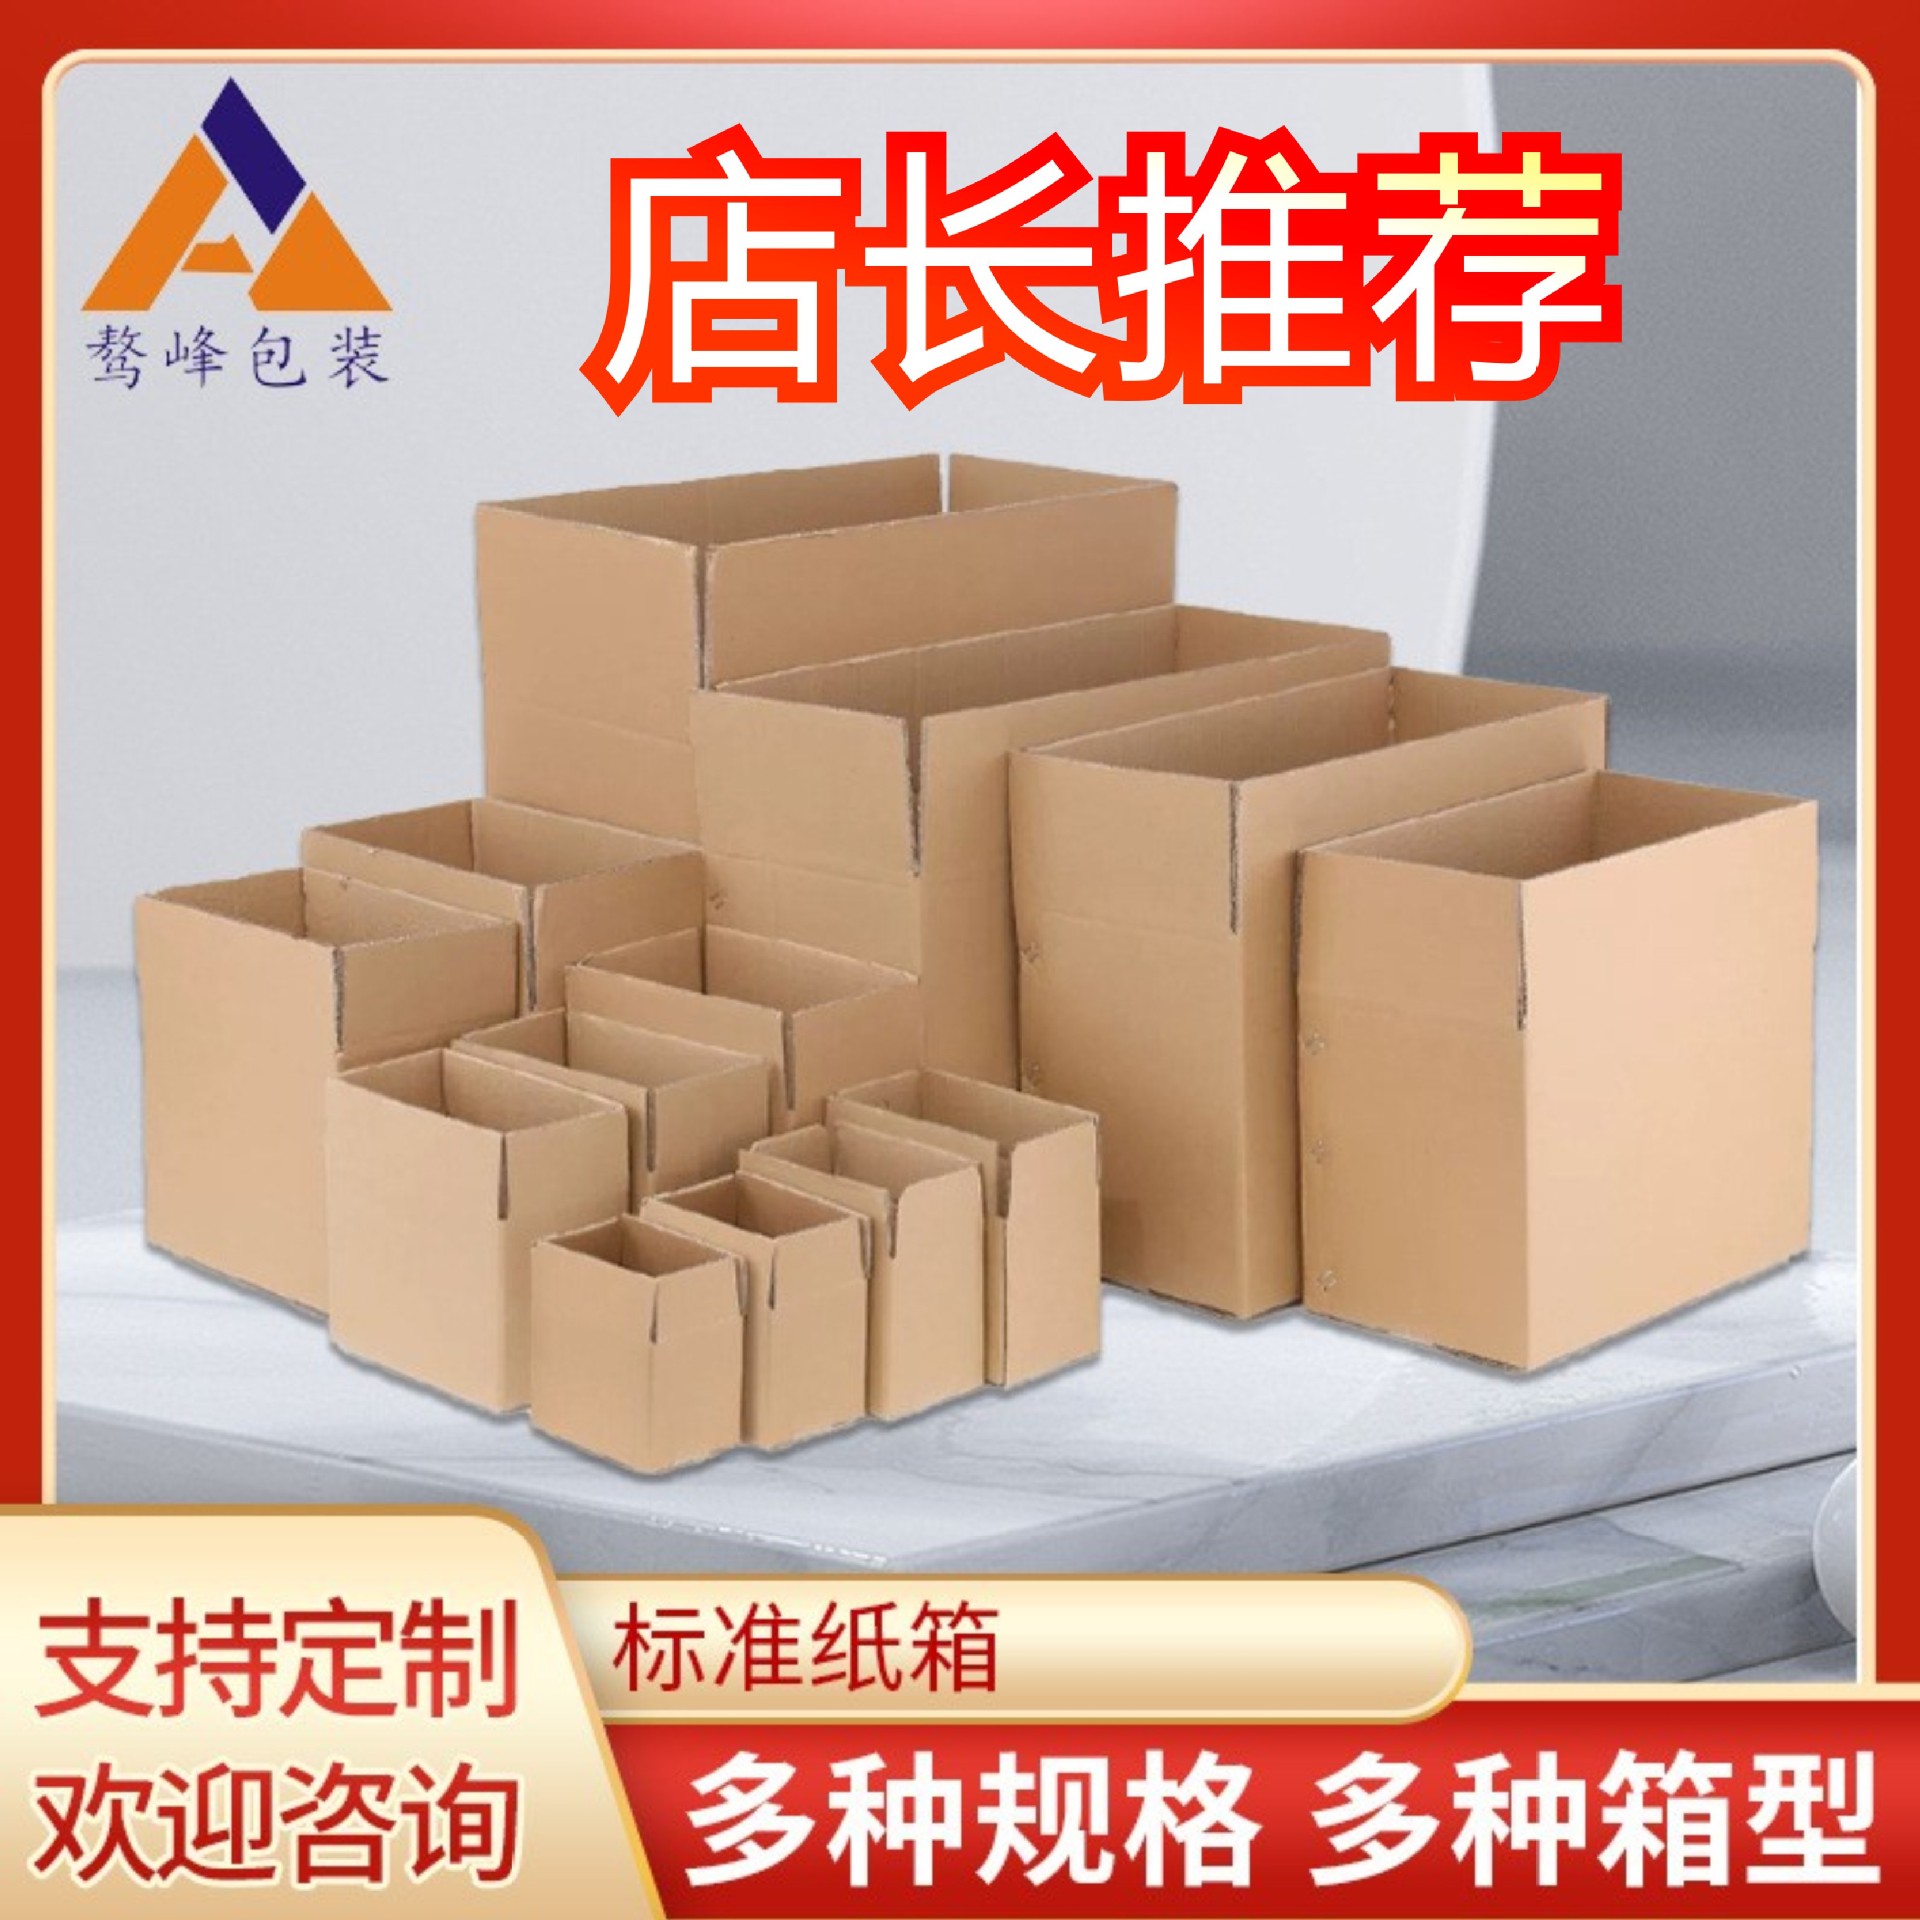 四川成都标准纸箱批发快递物流包装搬家纸箱其他打包纸盒现货销售